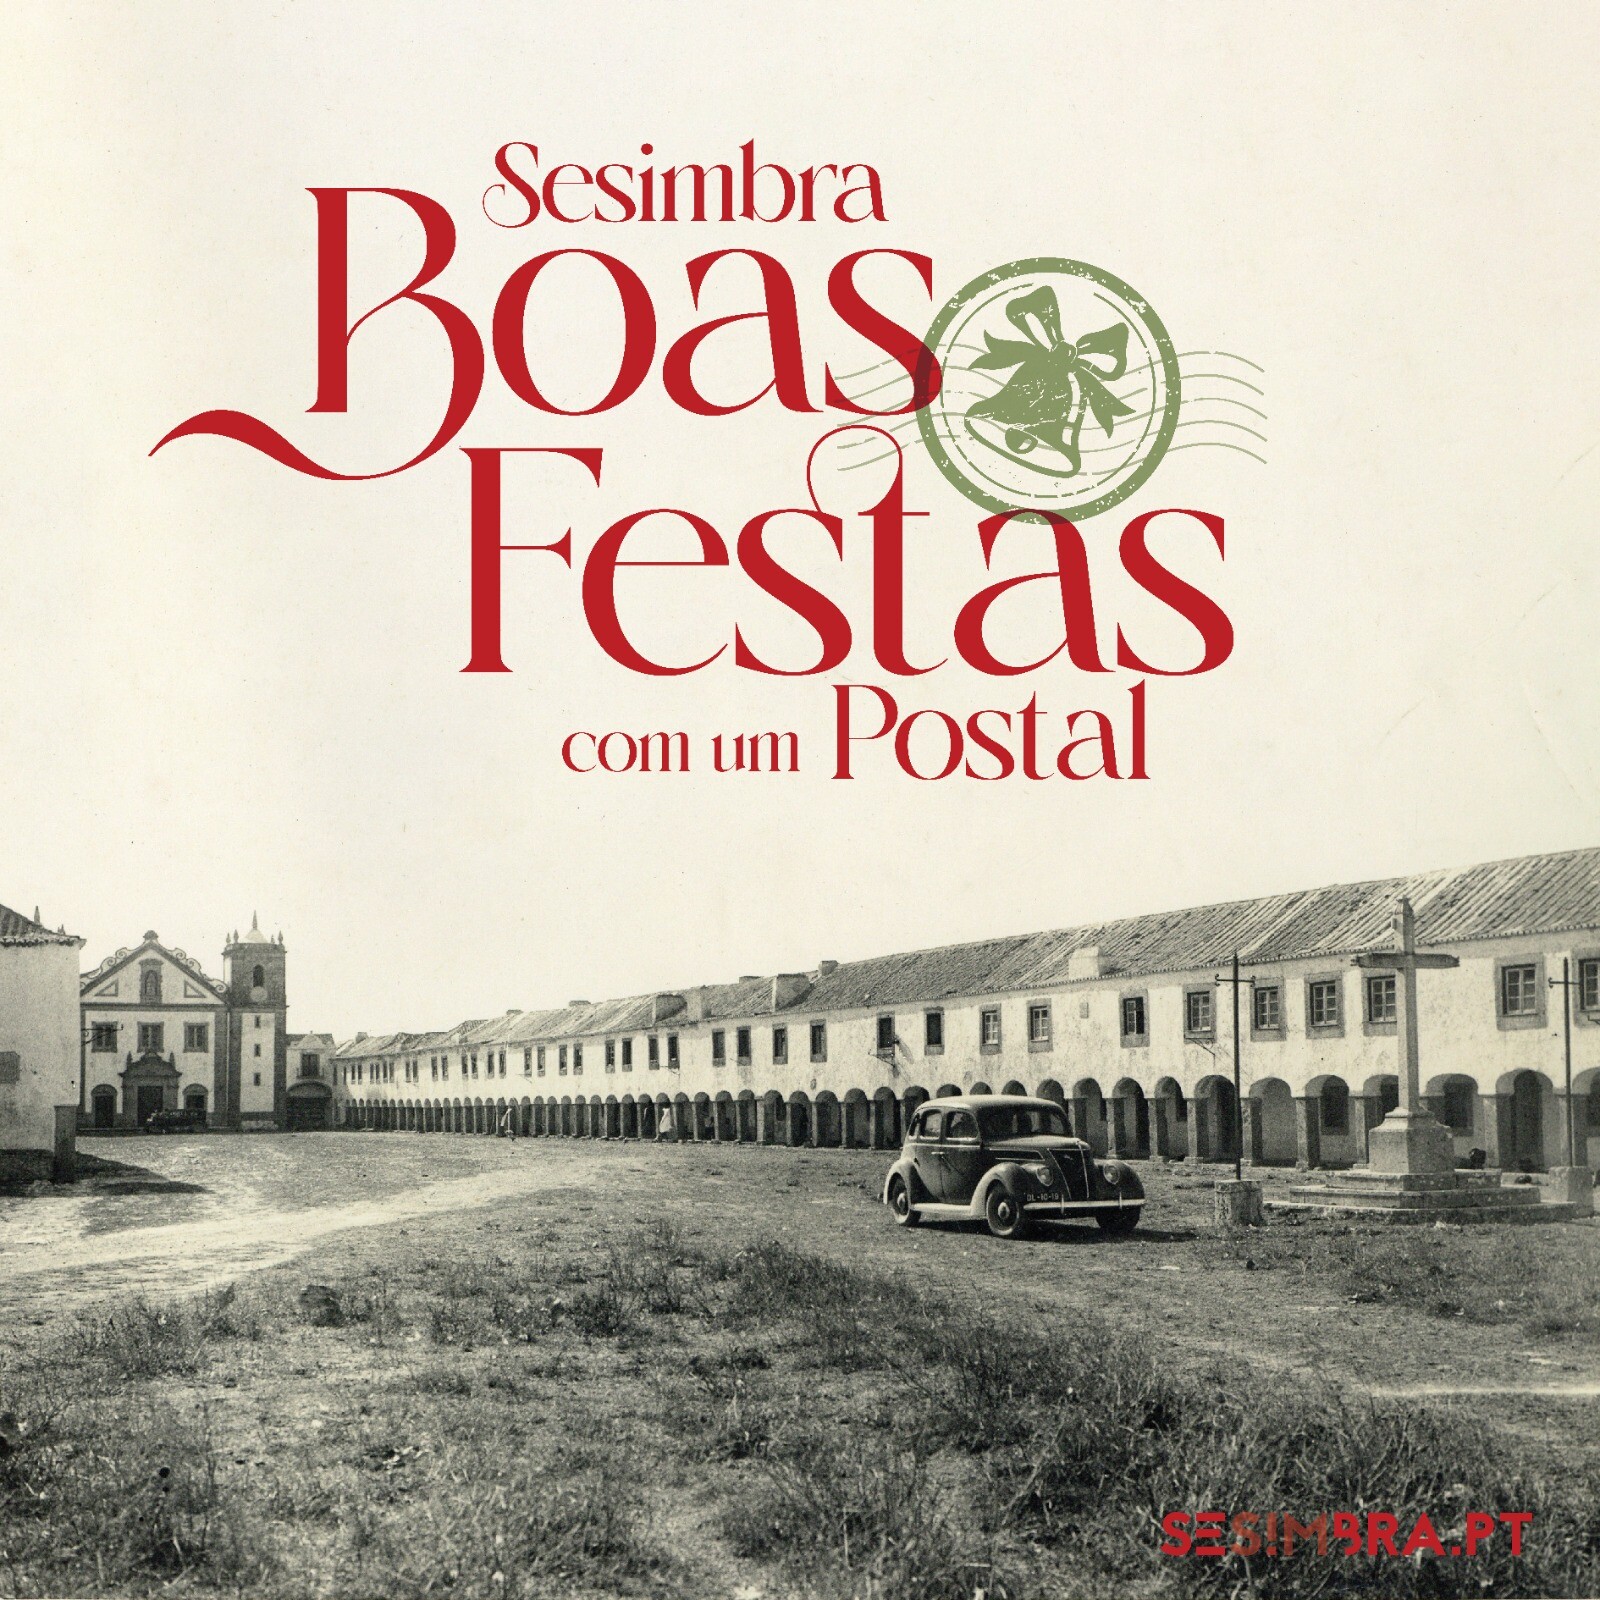 Sesimbra_Boas Festas com um Postal (4)